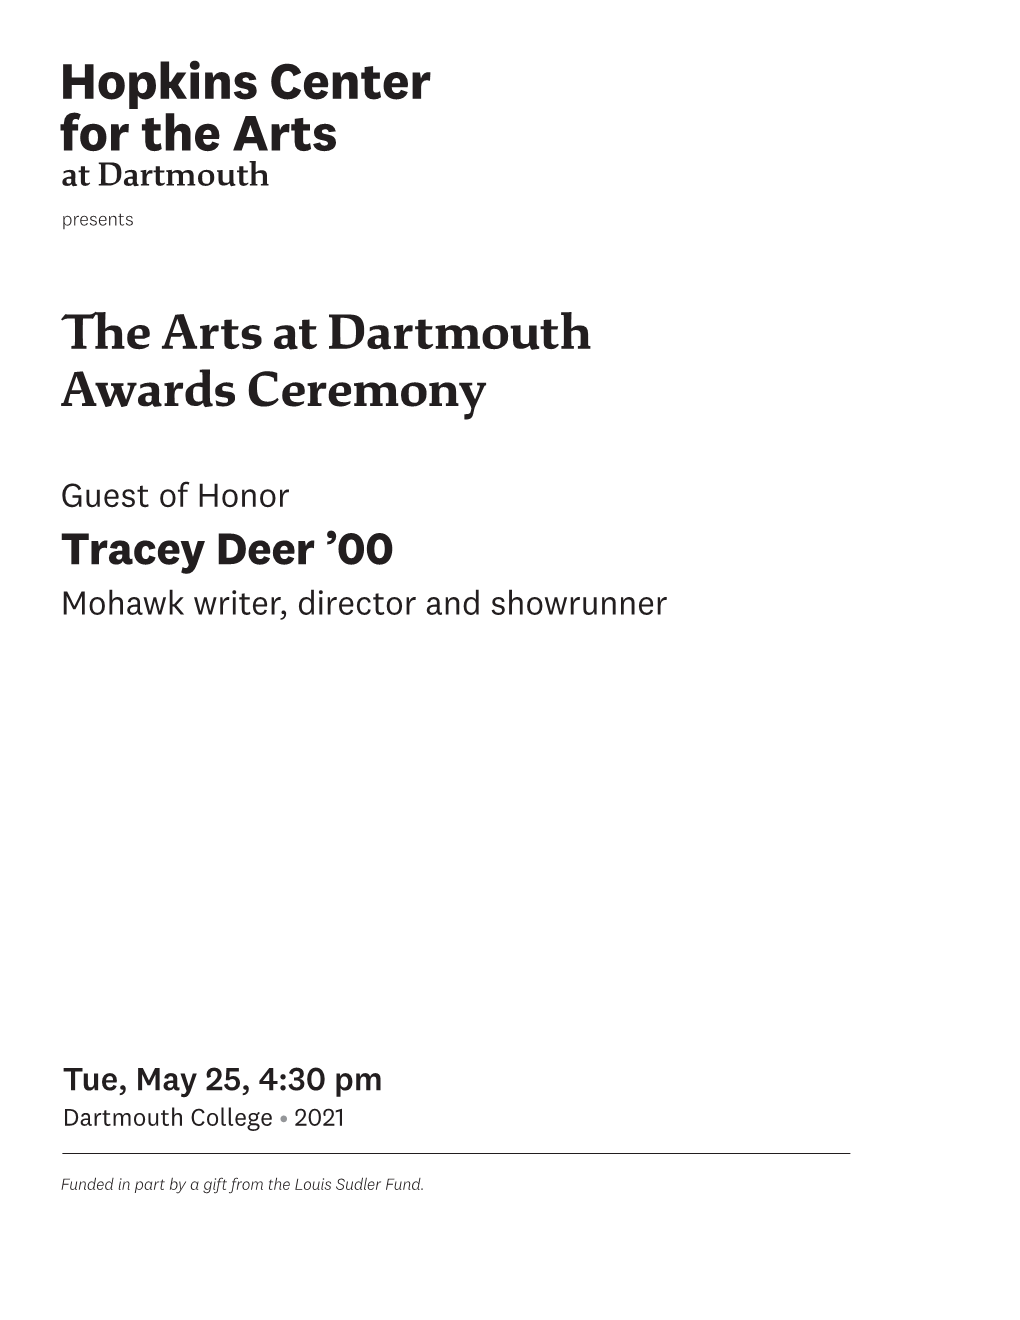 The Arts at Dartmouth Awards Ceremony